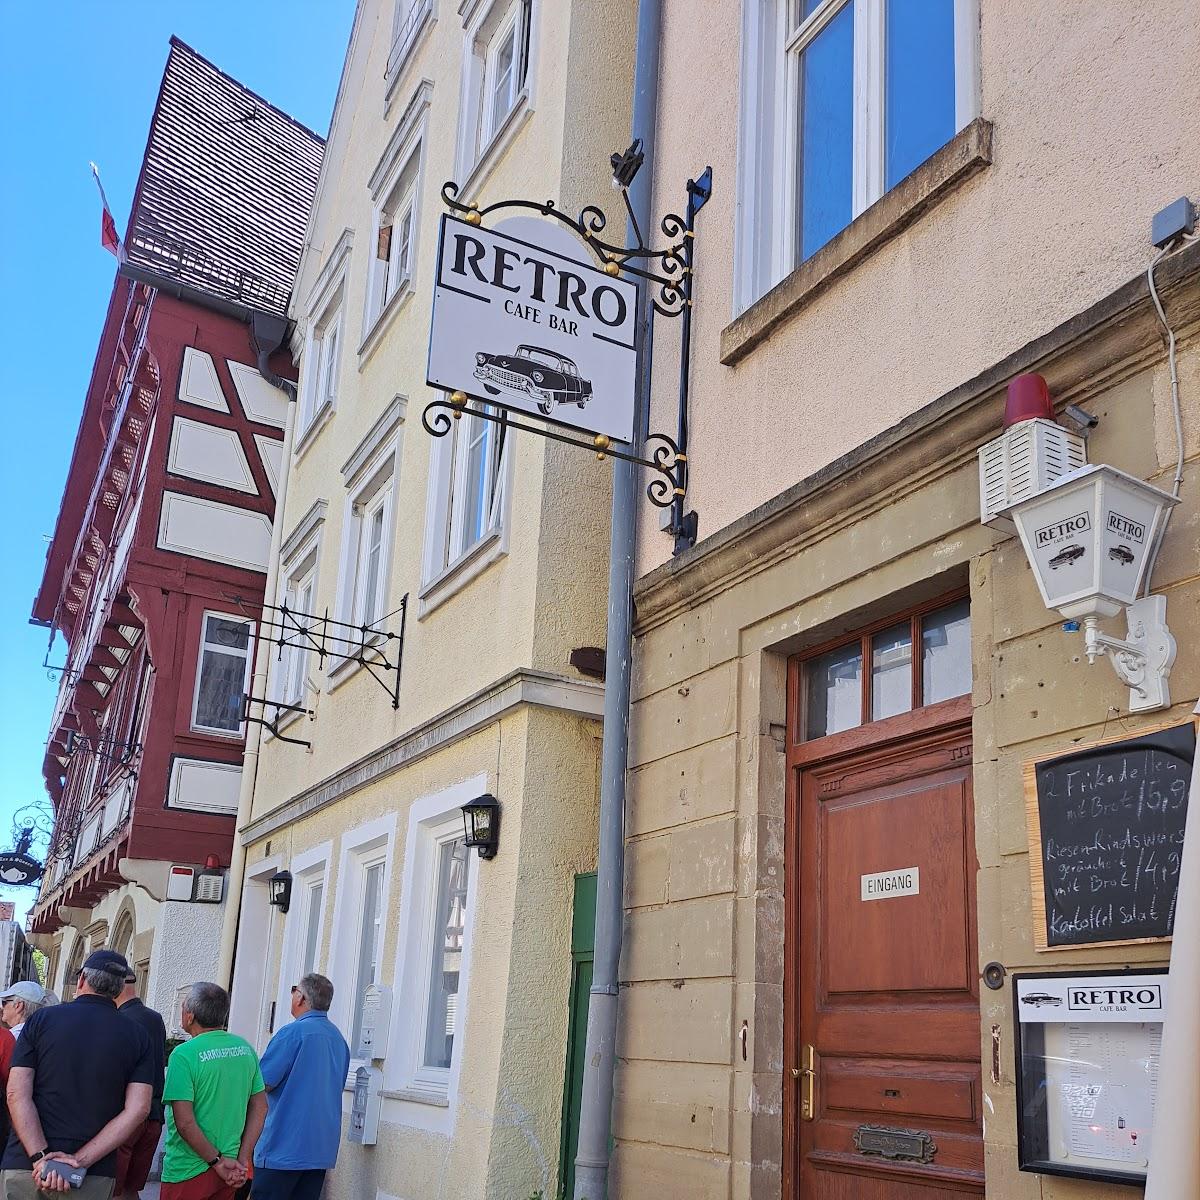 Restaurant "Teehaus" in Bad Wimpfen